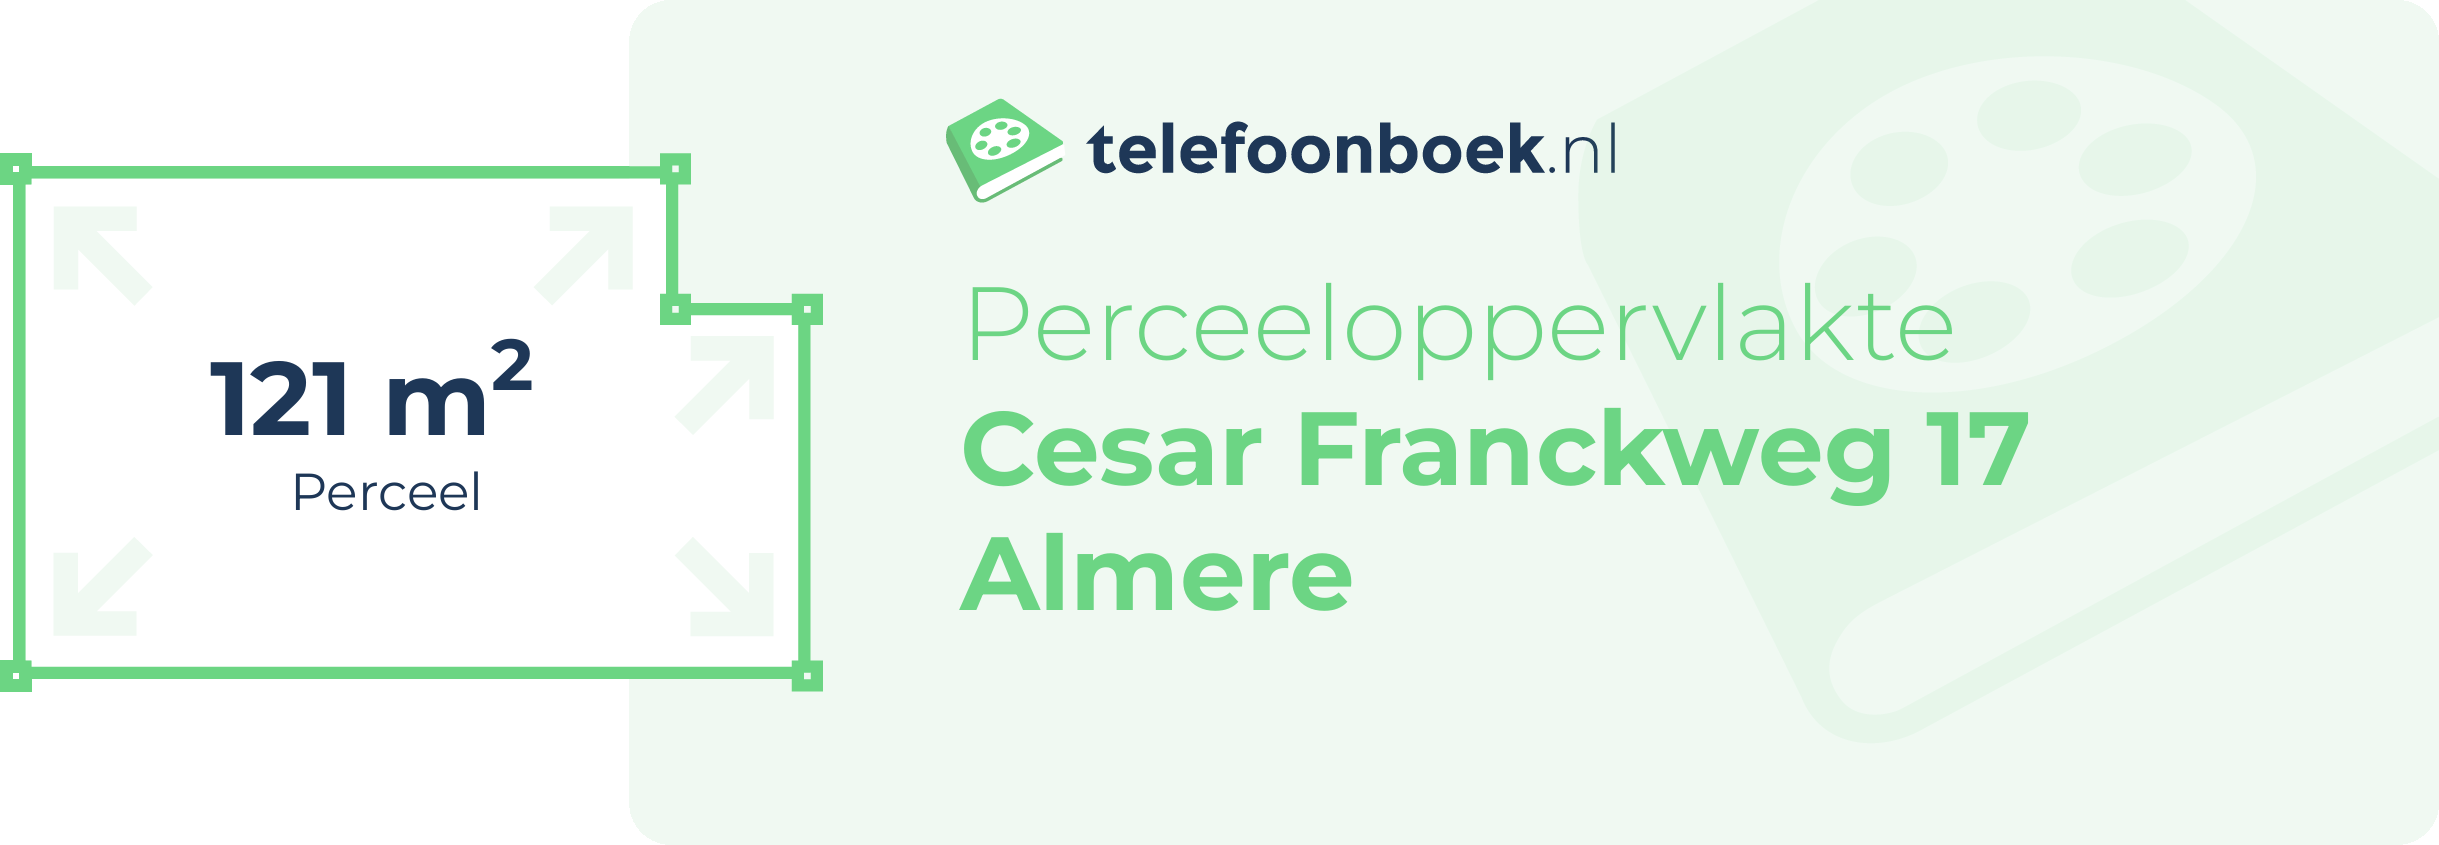 Perceeloppervlakte Cesar Franckweg 17 Almere